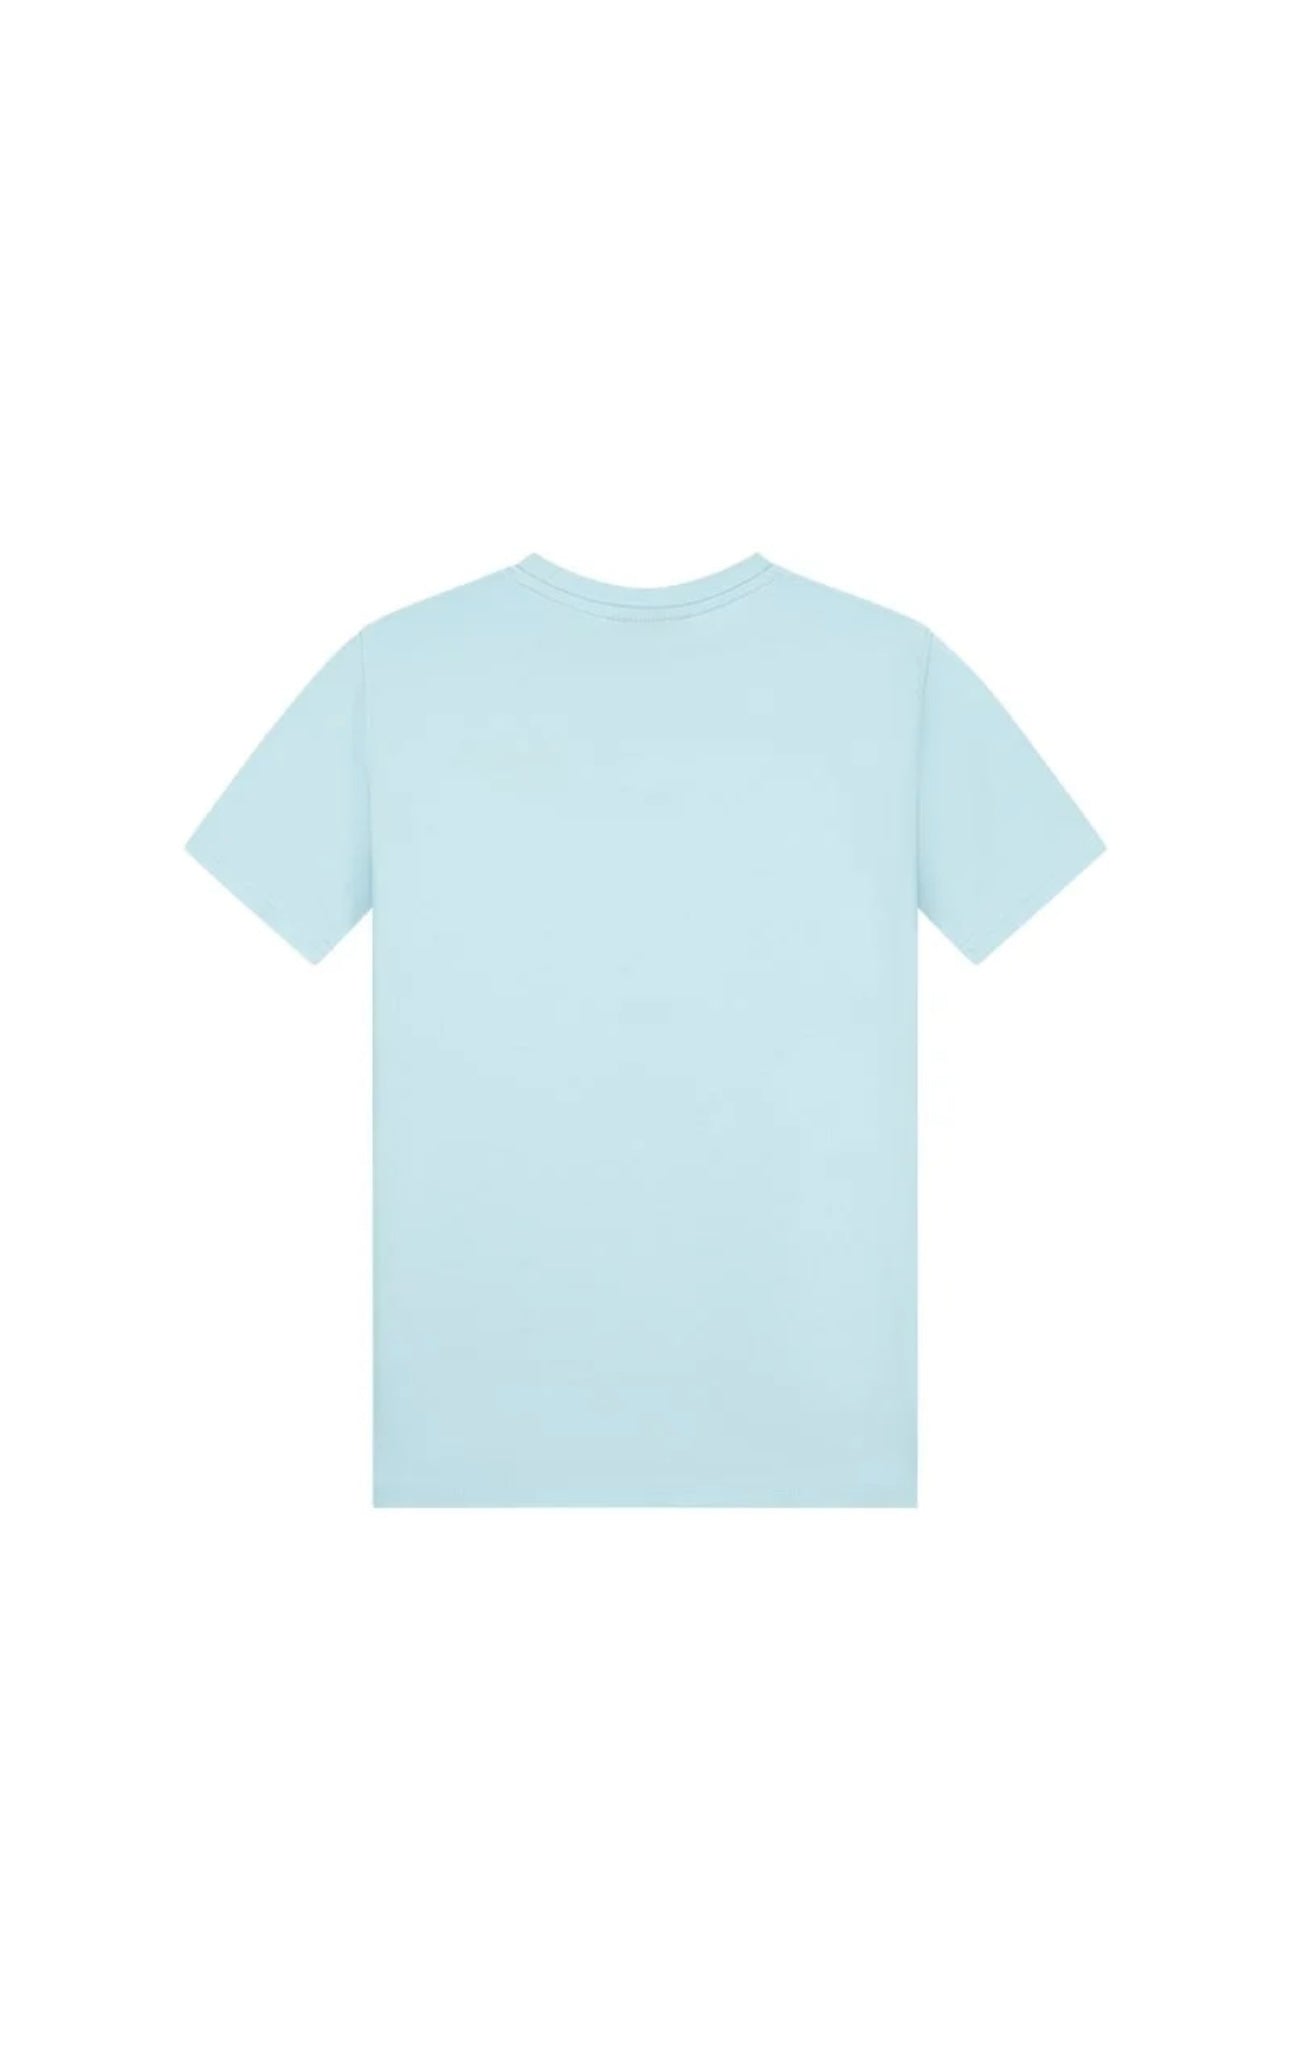 Malelions junior sport counter t-shirt - light blue